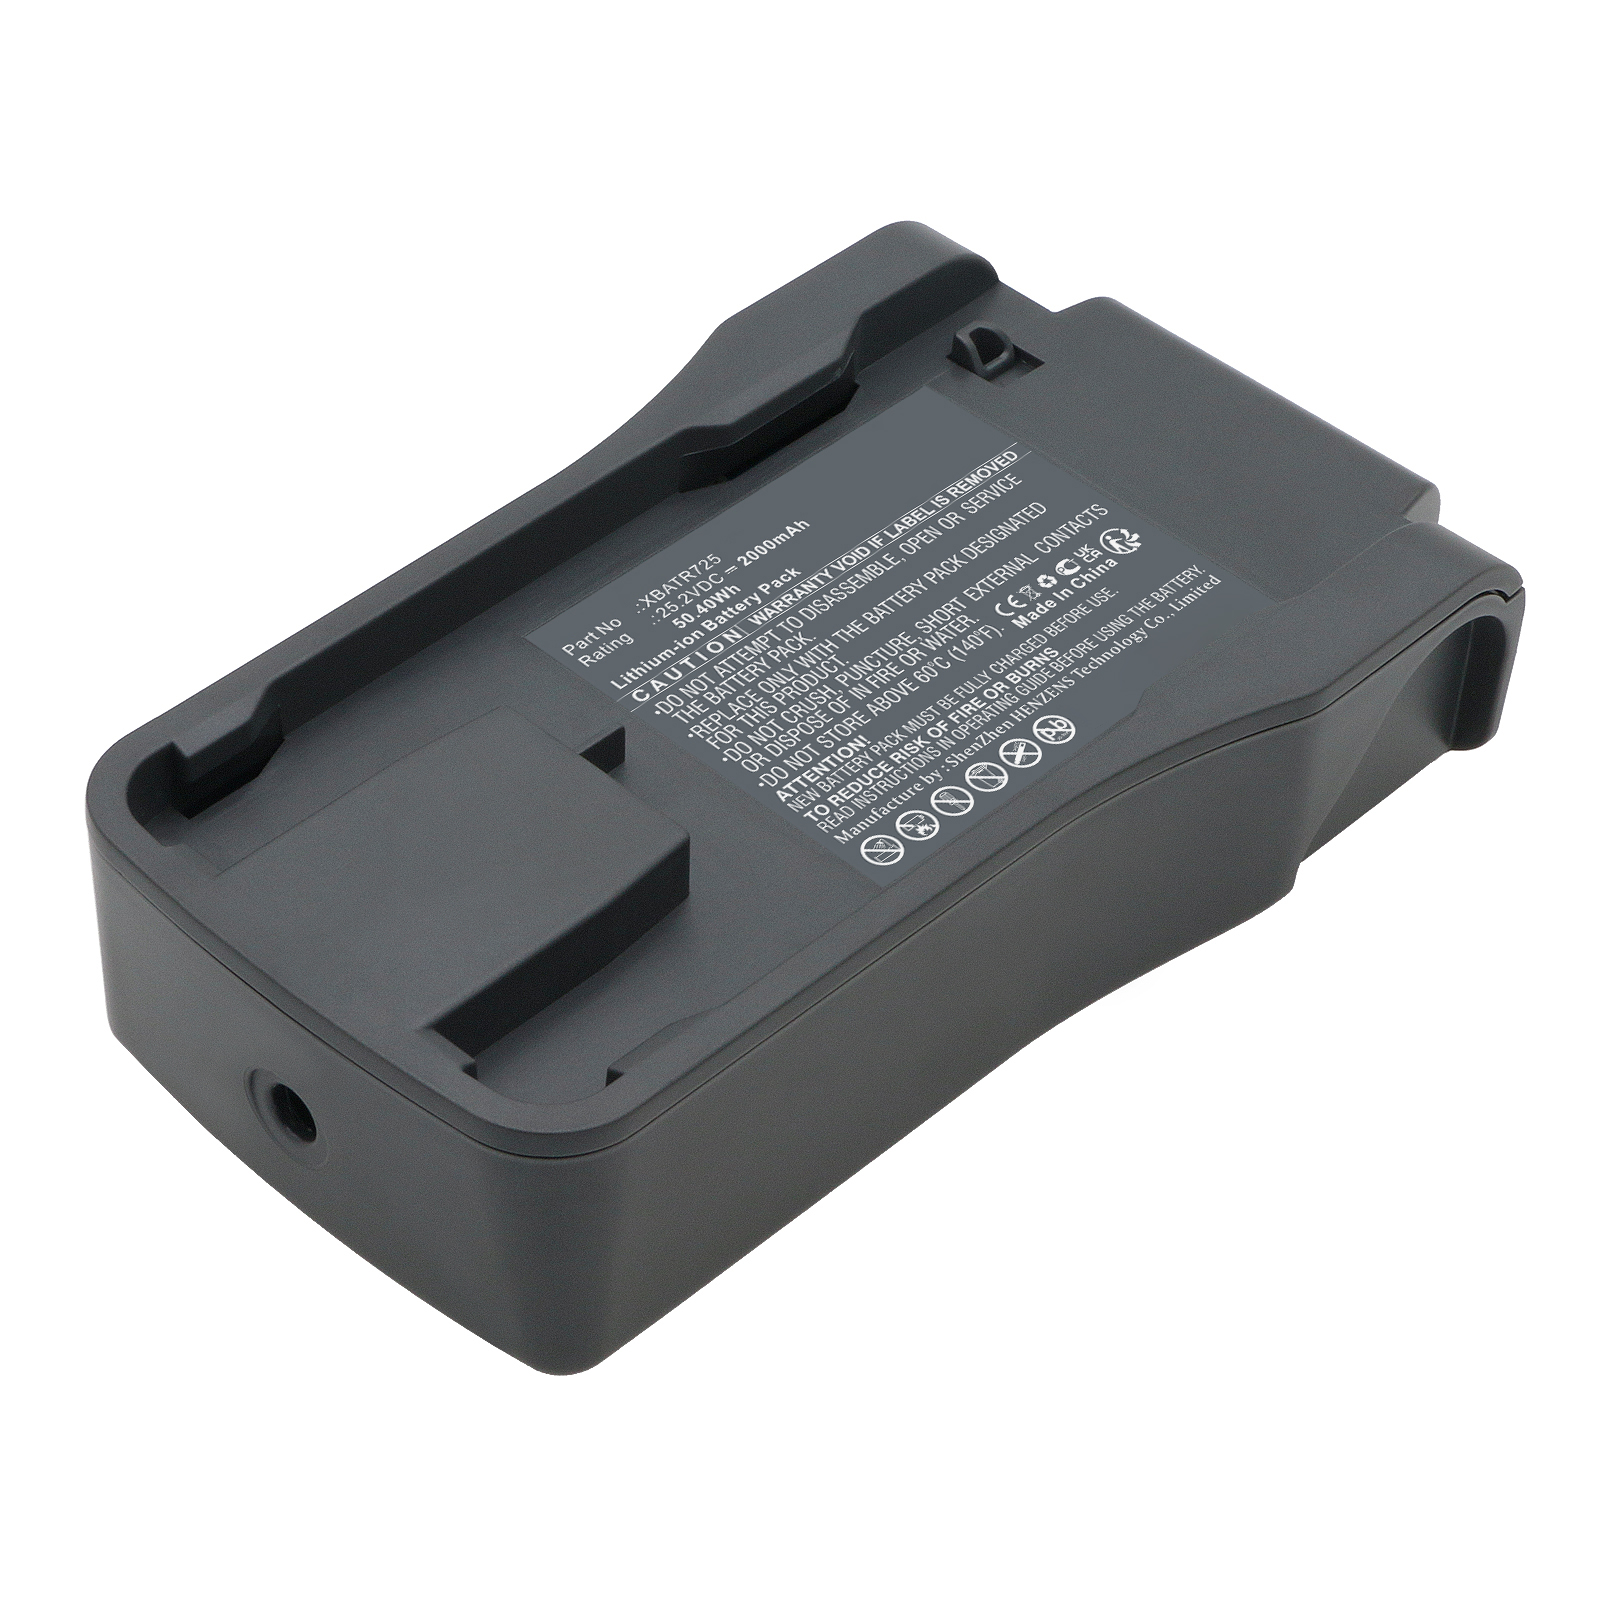 Synergy Digital Vacuum Cleaner Battery, Compatible with Shark XBATR725 Vacuum Cleaner Battery (Li-ion, 25.2V, 2000mAh)